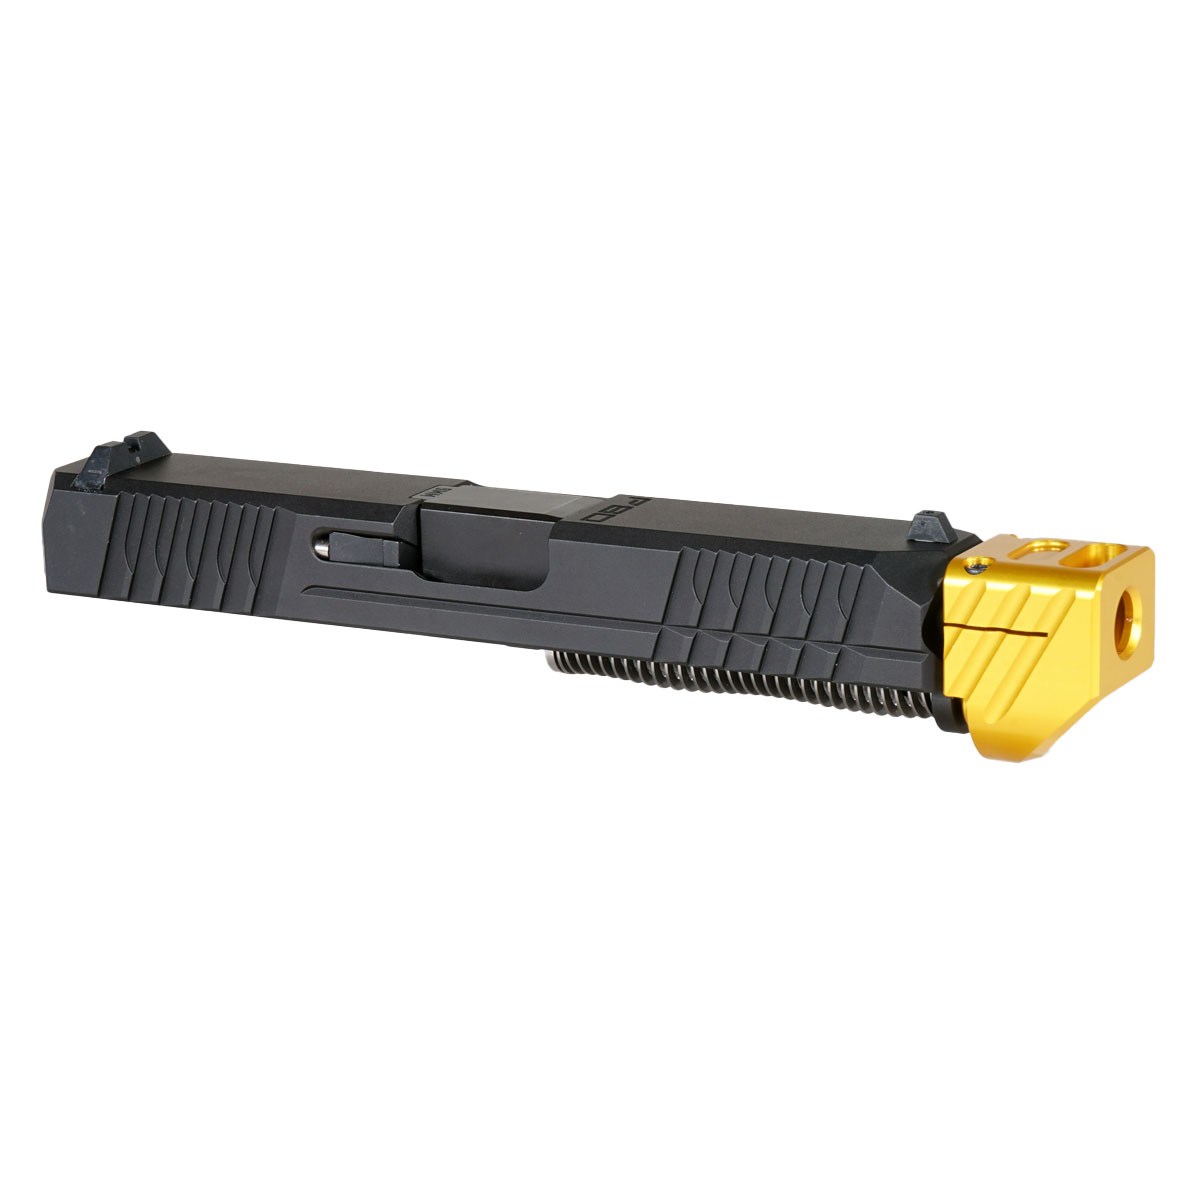 OTD 'Paracausal V2 w/ Gold Compensator' 9mm Complete Slide Kit - Glock 19 Gen 1-3 Compatible